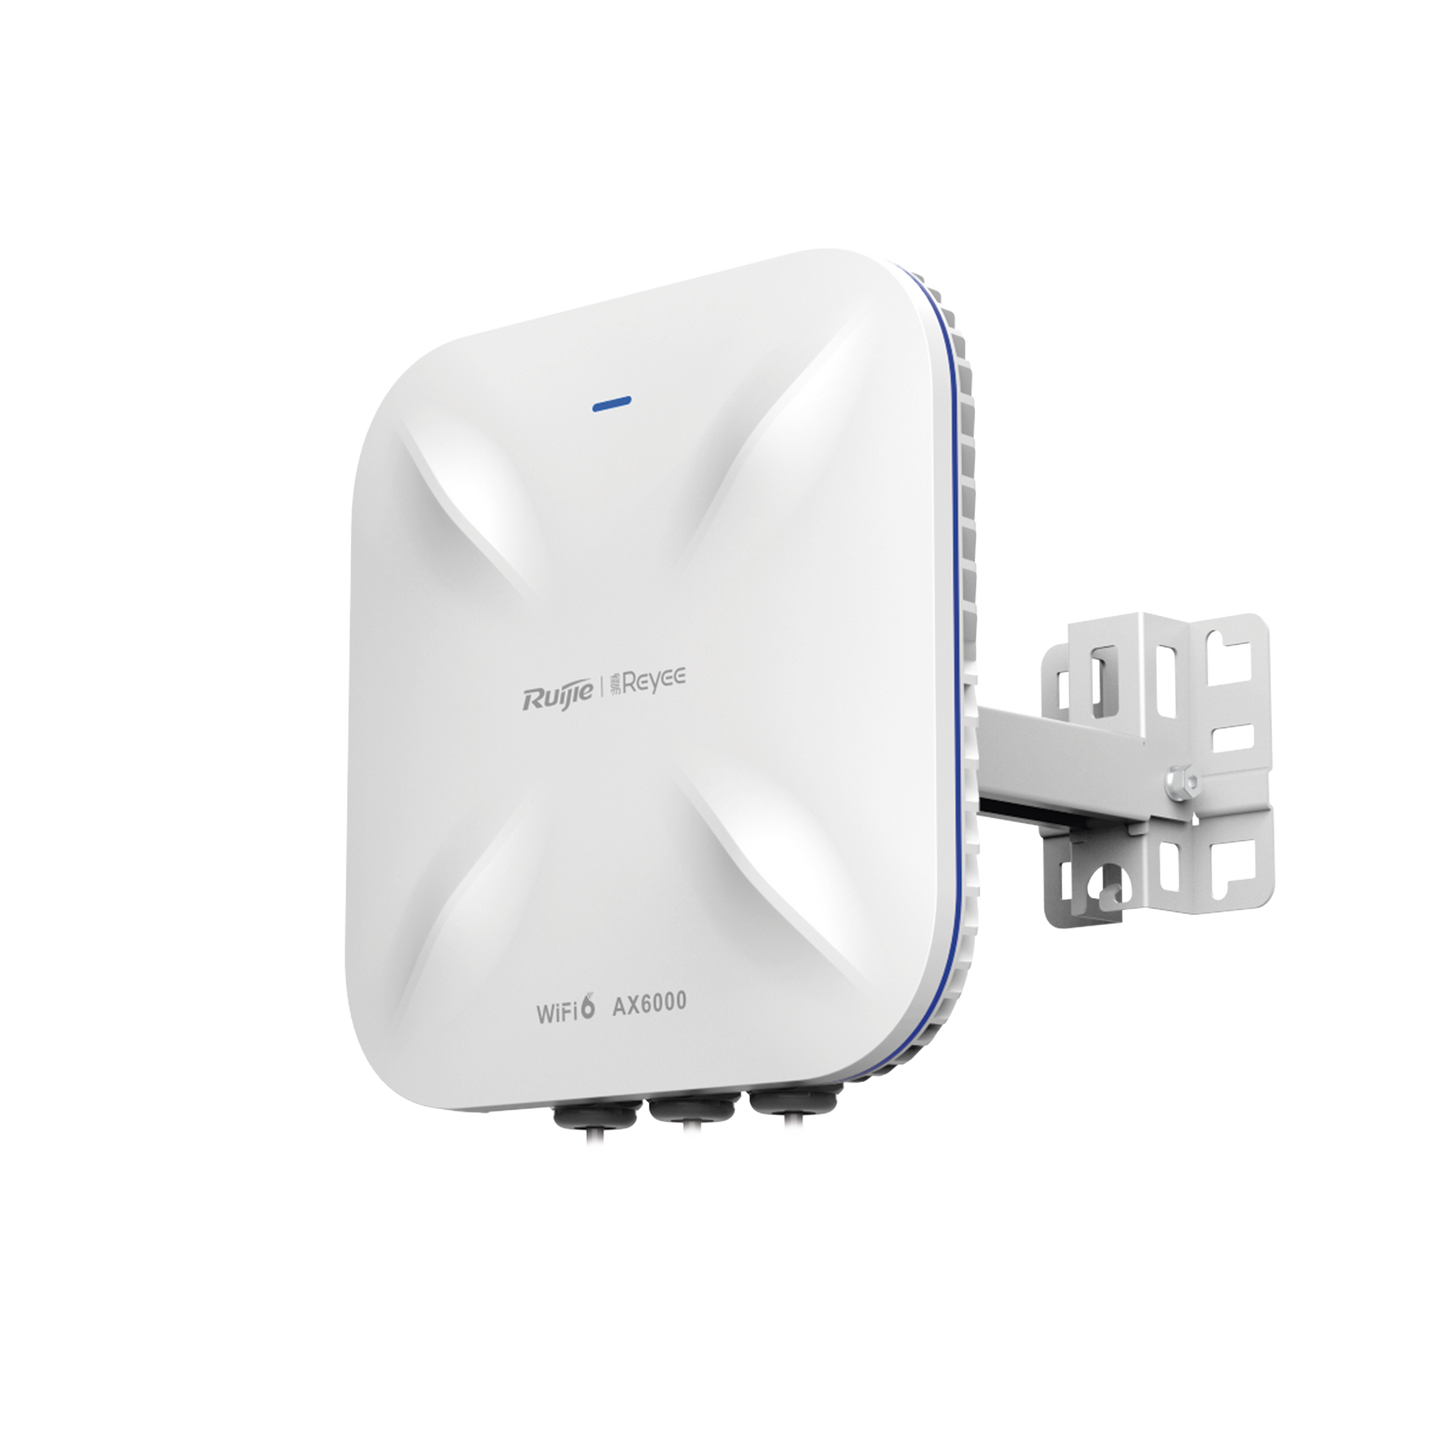 Punto de Acceso Wi-Fi 6 Industrial para Exterior 5.95Gbps, MU-MIMO4x4, 360°, Filtros Anti Interferencia y Auto Optimización con IA, puerto eth 2.5G y SFP